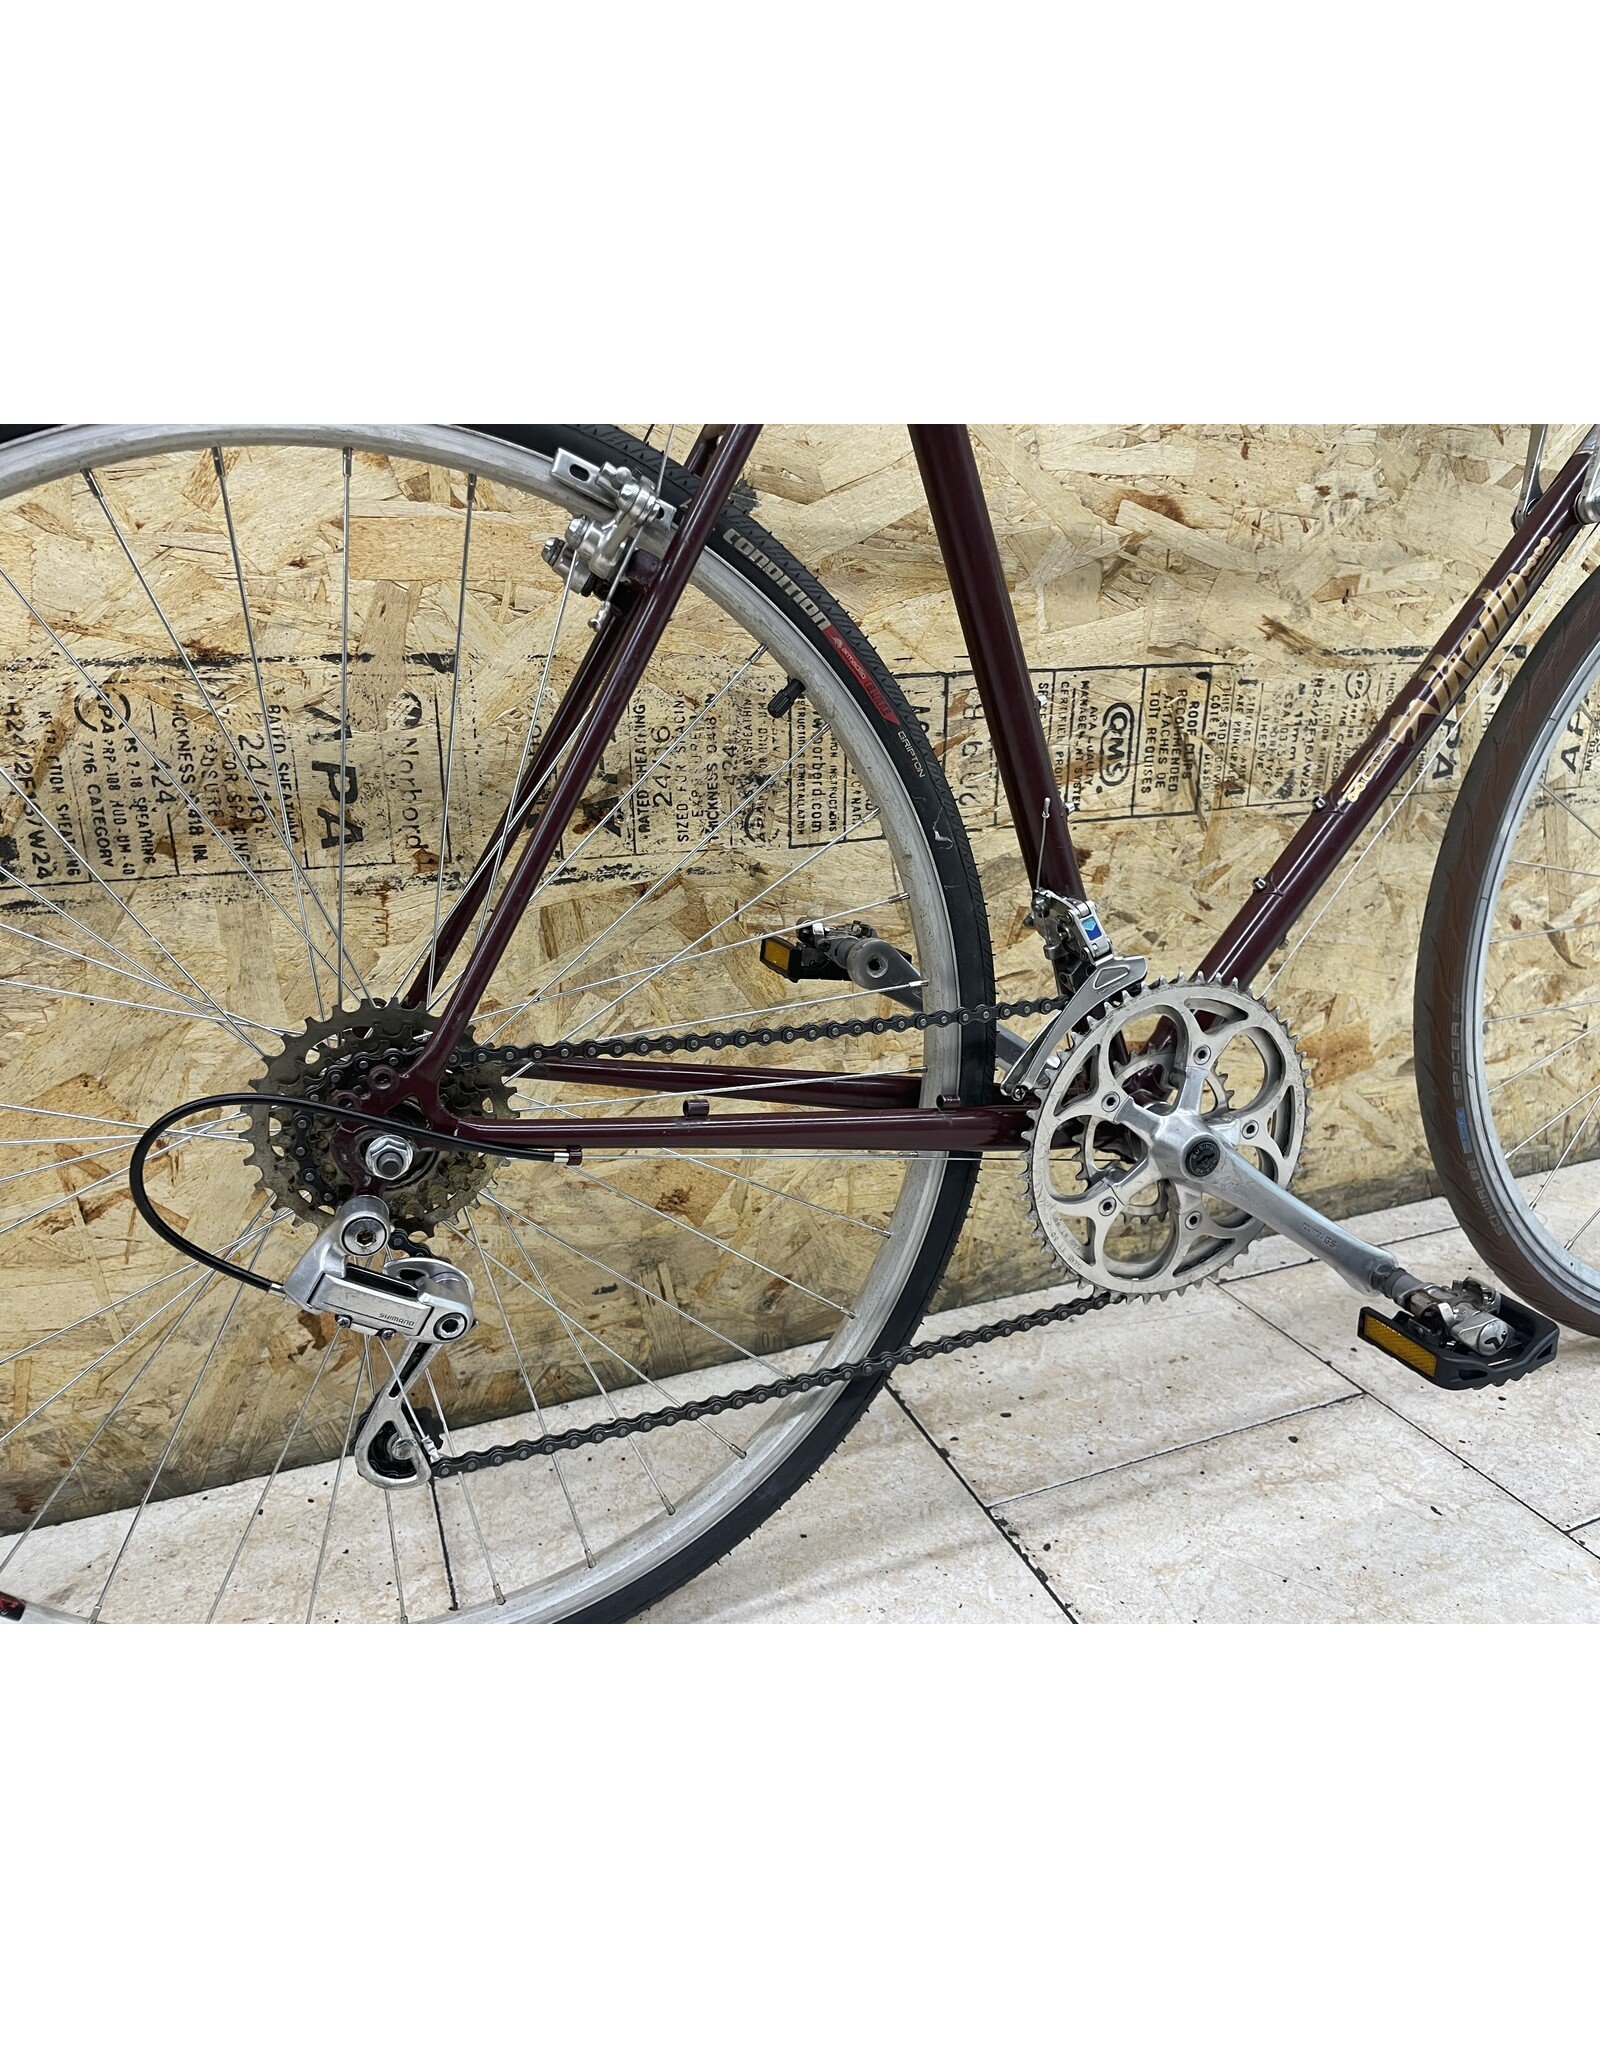 Vélo de cyclotourisme usagé Mikado 54cm - 12216